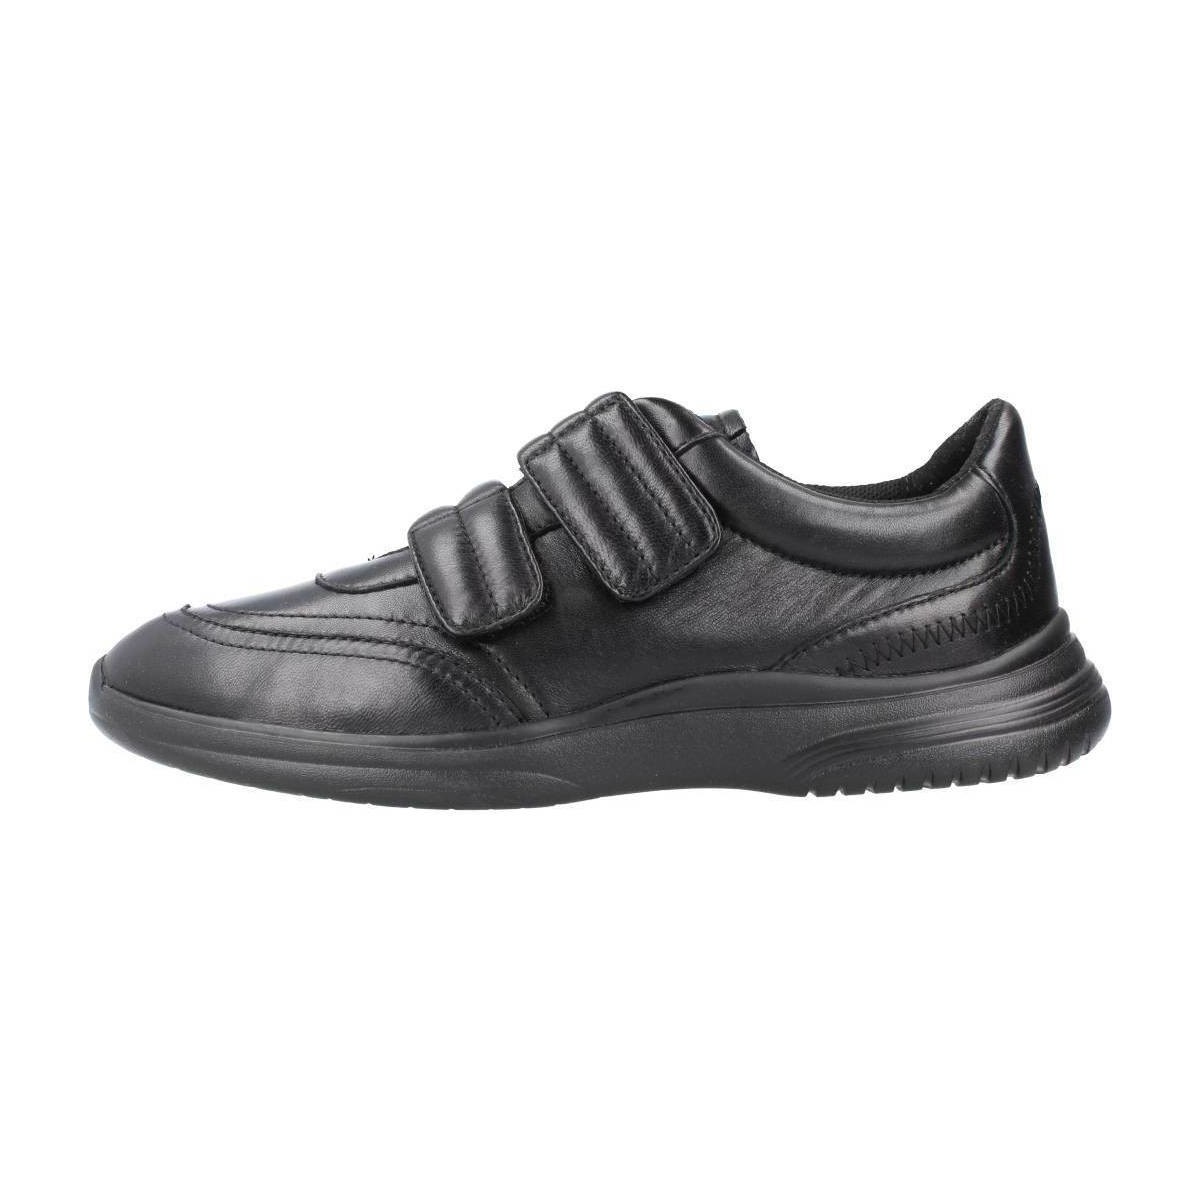 Schoenen Dames Sneakers Geox D PILLOW D Zwart